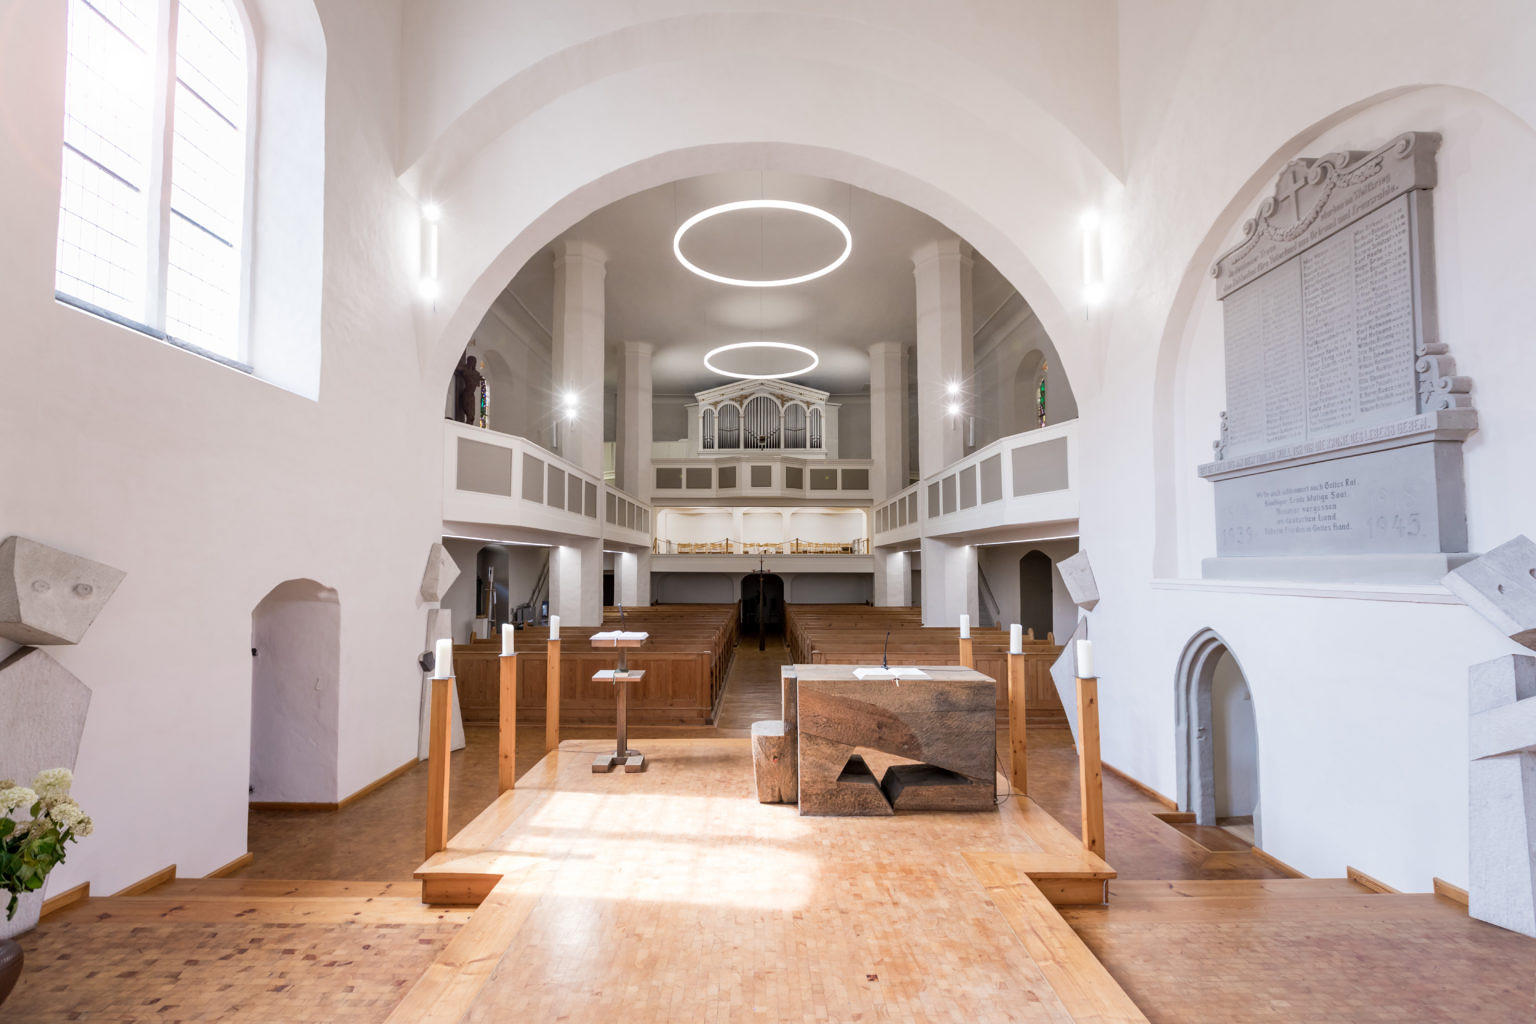 Iluminación moderna para iglesias